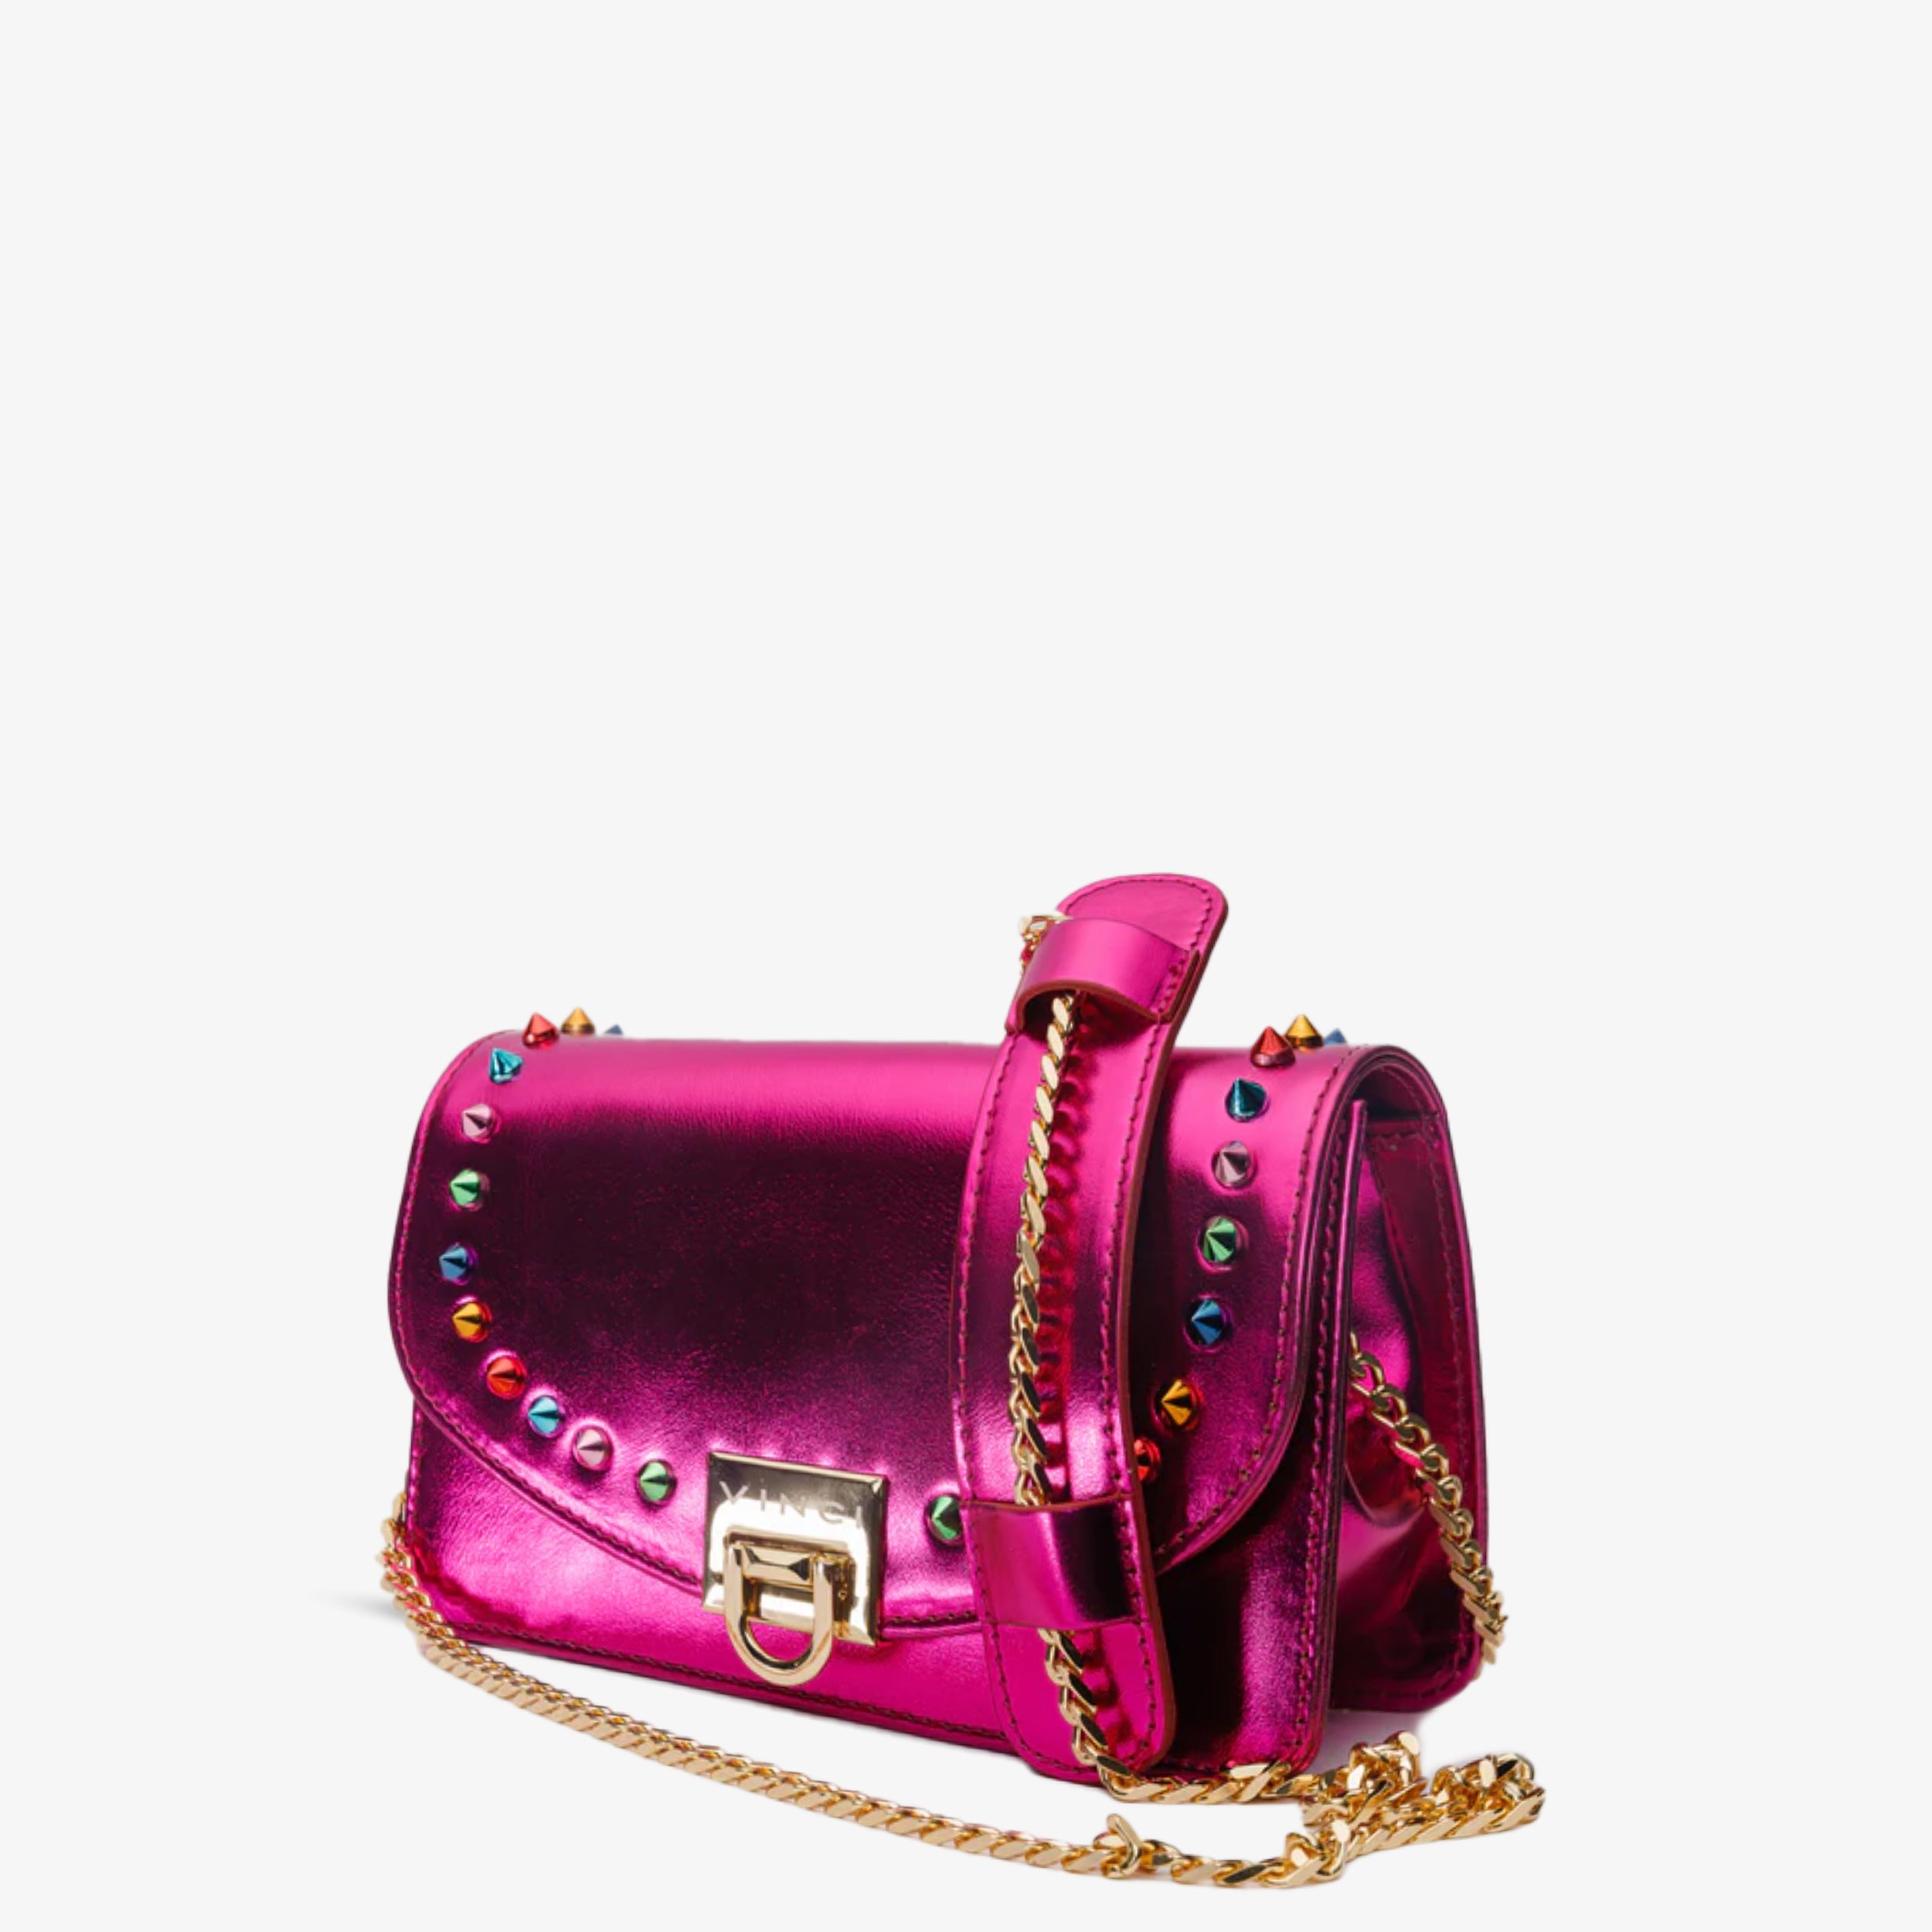 The Caris Fuchsia Leather Handbag